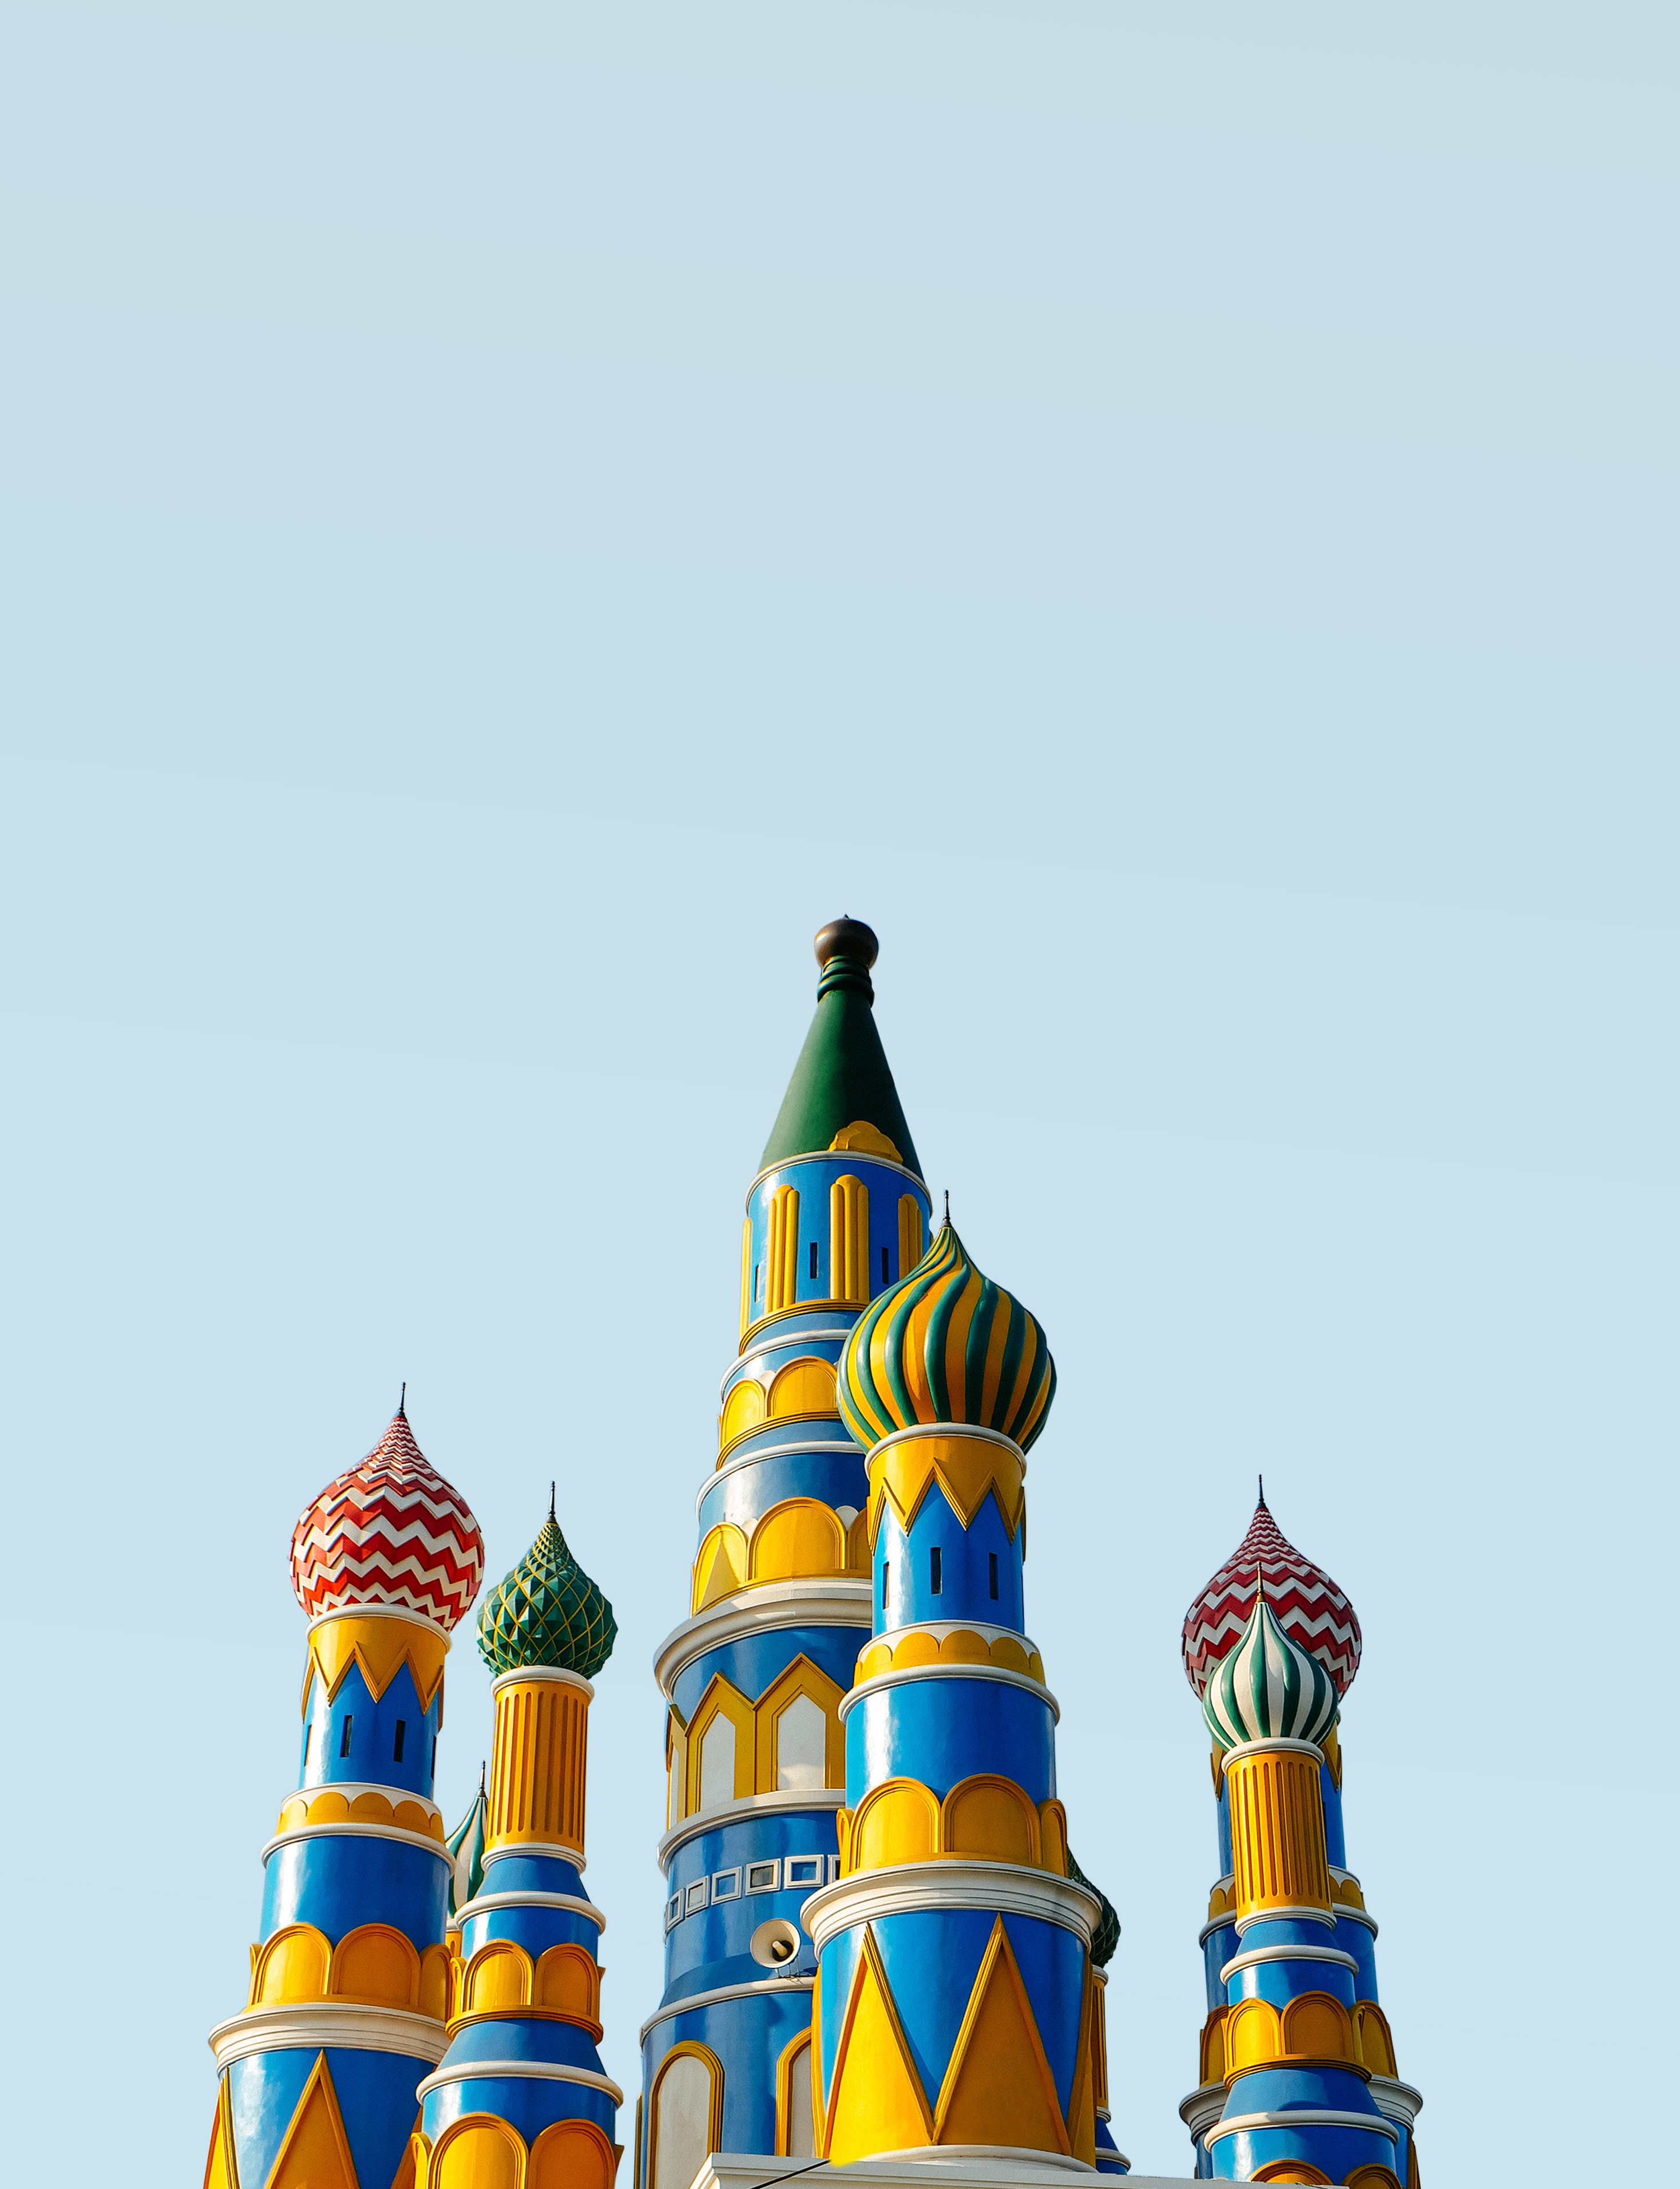 Desain kubah Masjid An Nurumi terinspirasi dari Katedral St. Basil, Moscow | Foto: Bangkit Ristant on Unsplash